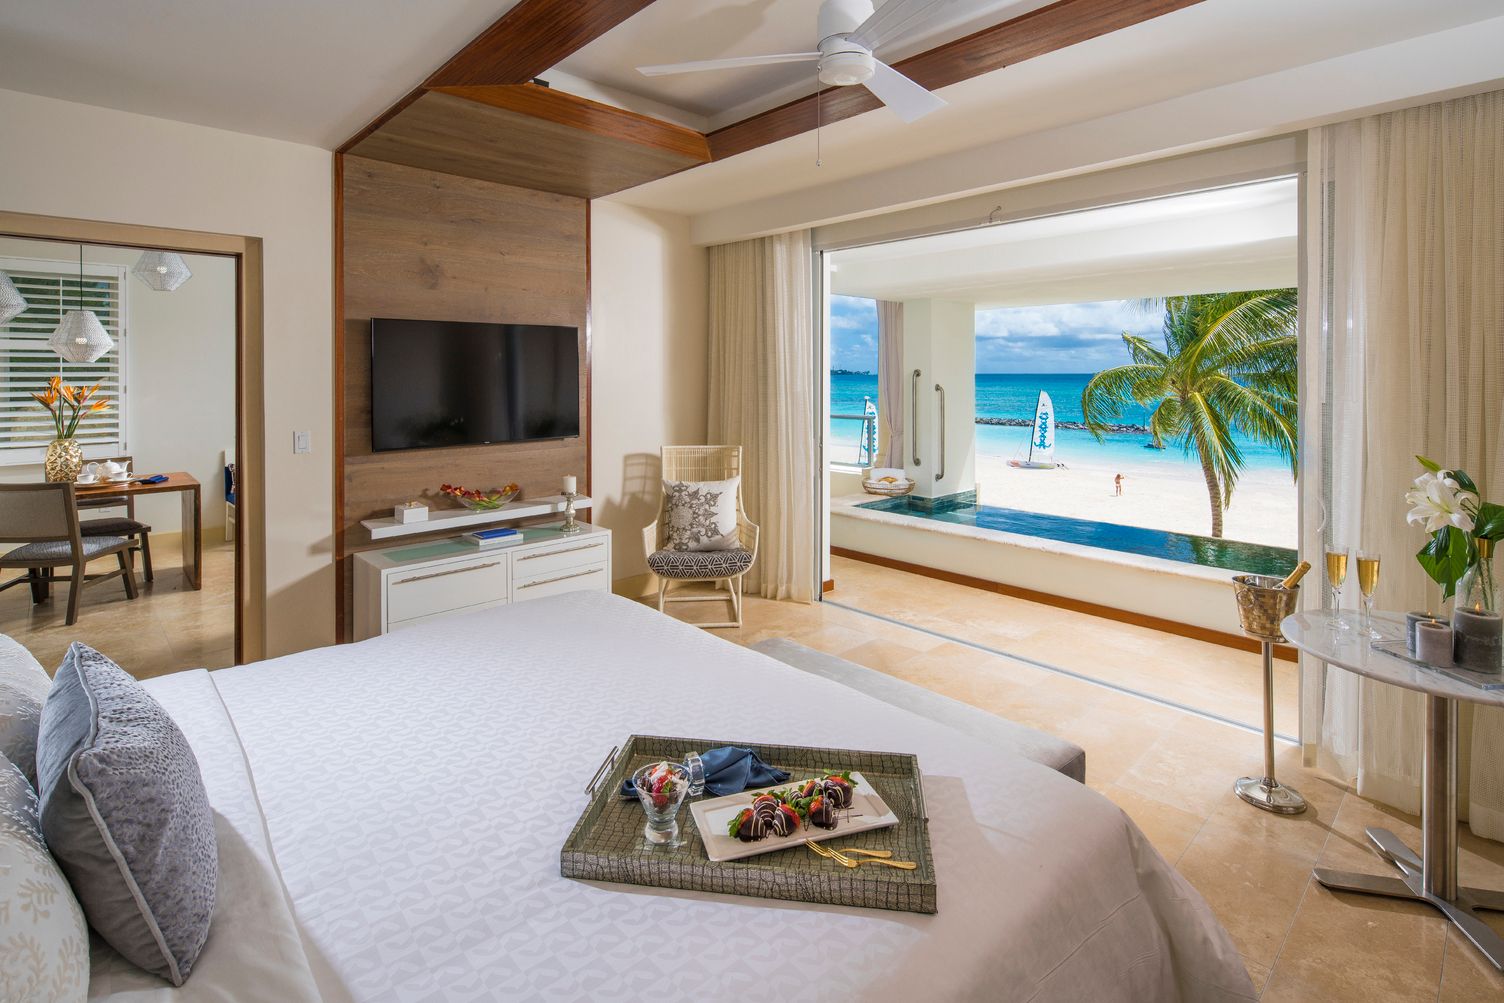 Il vostro sogno a occhi aperti in un hotel di lusso ai Caraibi